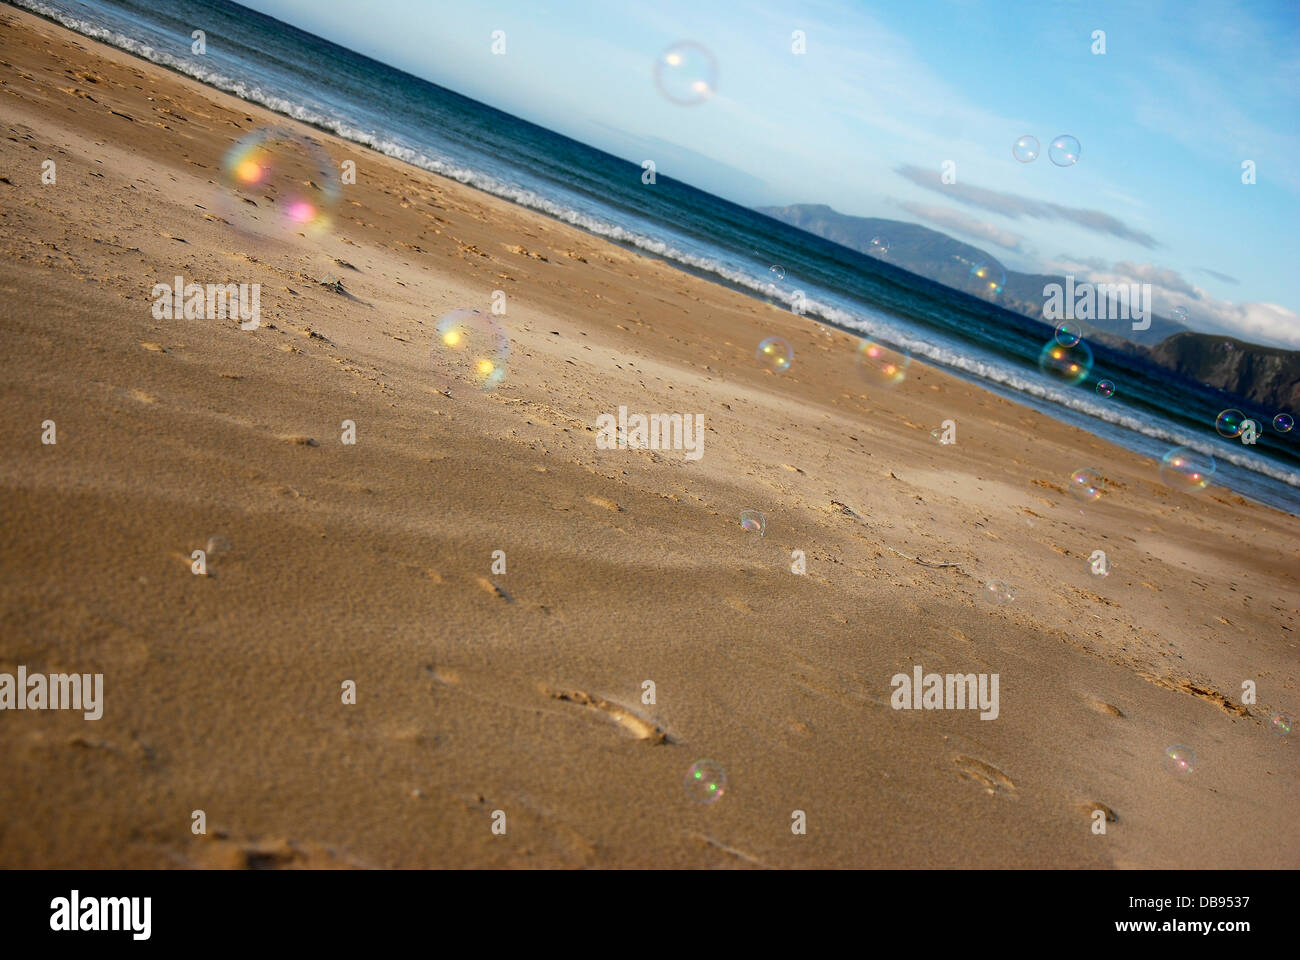 Bolle sulla sabbia a lonely beach Foto Stock